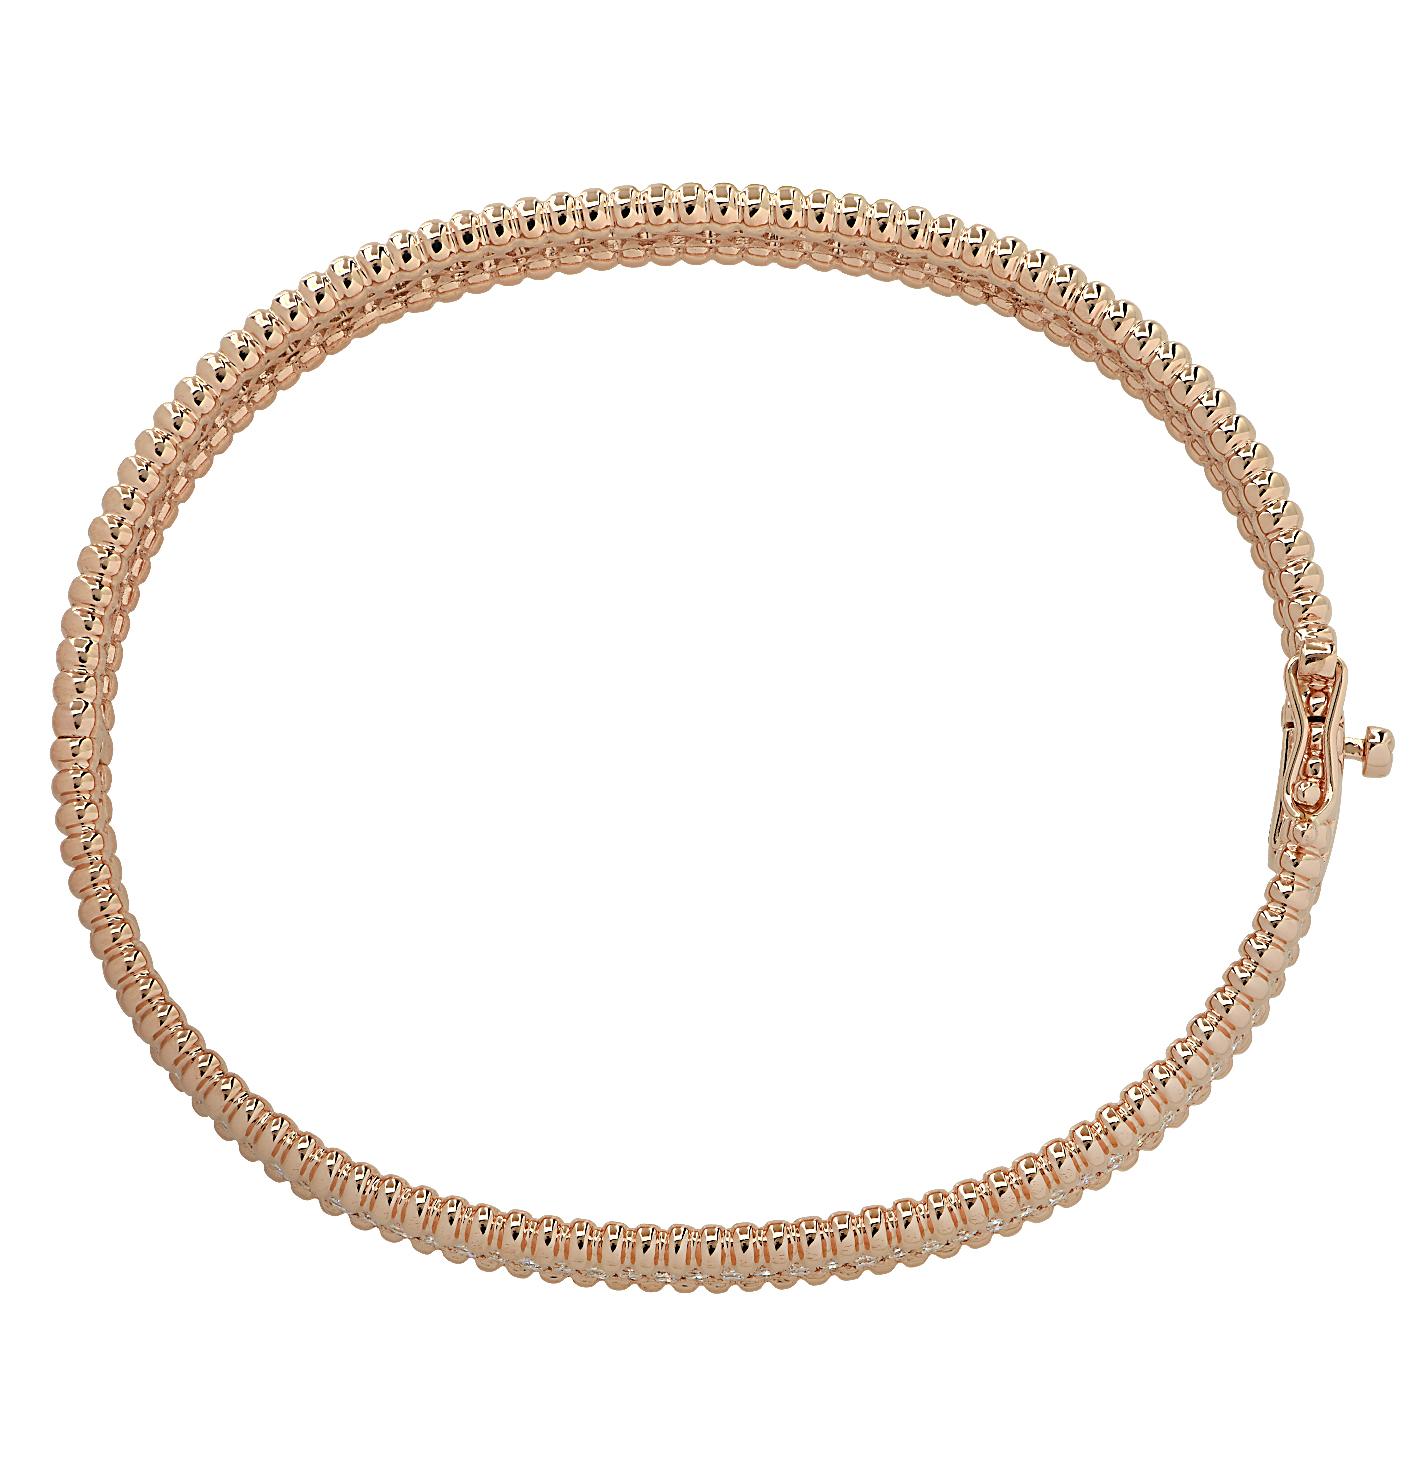 Superbe bracelet Vivid Diamonds en or rose, serti de 262 diamants ronds de taille brillant pesant 2,87 carats au total, de couleur F-G et de pureté VS-SI. Cet élégant bracelet est serti de trois rangs de diamants, lacés de perles d'or rose créant